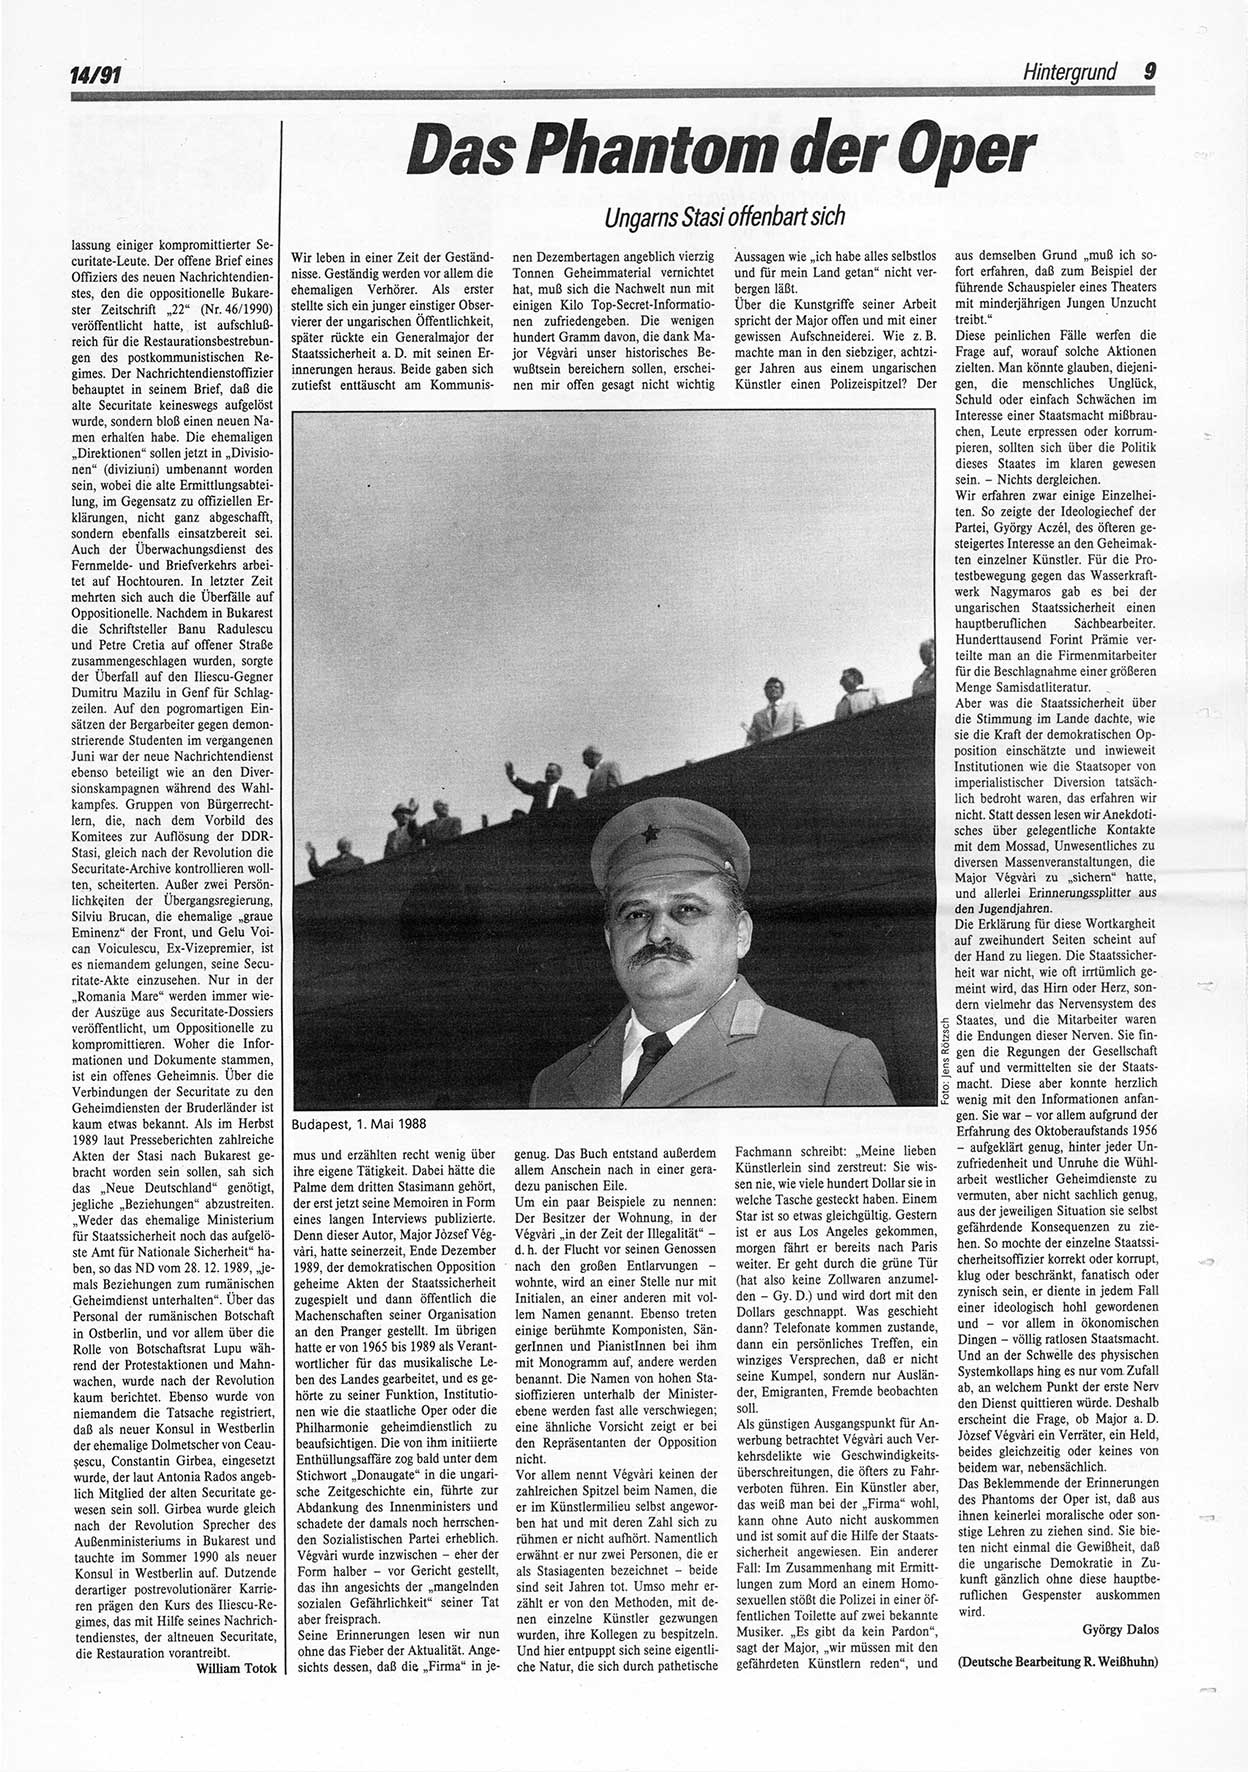 Die Andere, Unabhängige Wochenzeitung für Politik, Kultur und Kunst, Ausgabe 14 vom 3.4.1991, Seite 9 (And. W.-Zg. Ausg. 14 1991, S. 9)